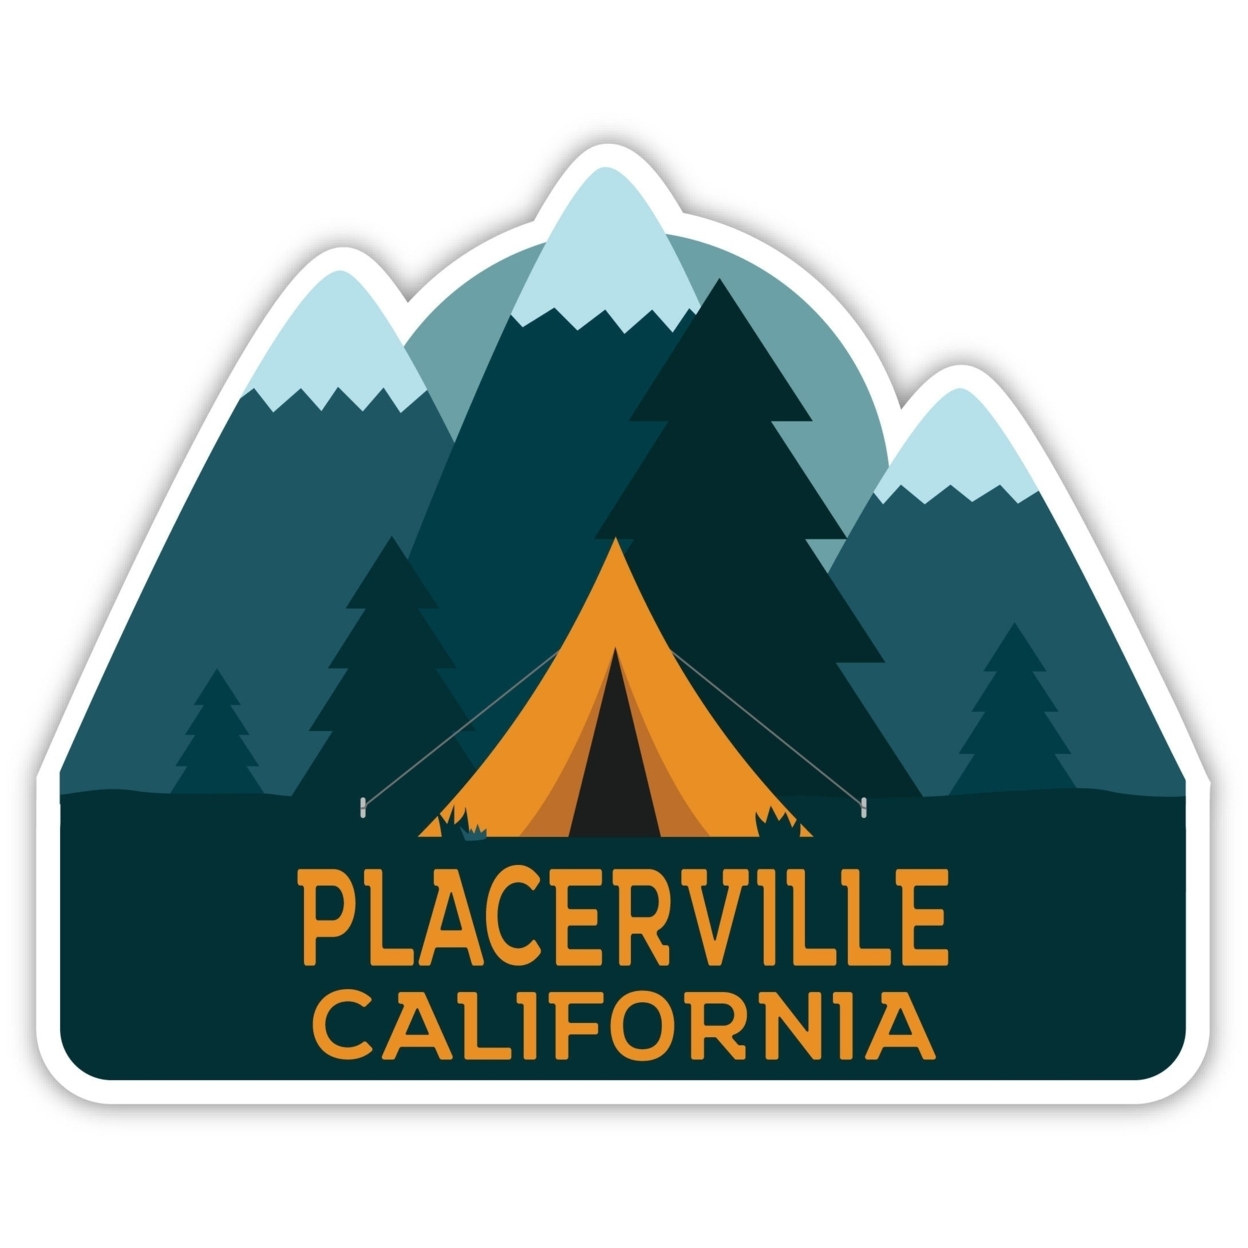 Placerville California Souvenir Decorative Stickers (Choose Theme And Size) - Single Unit, 4-Inch, Tent